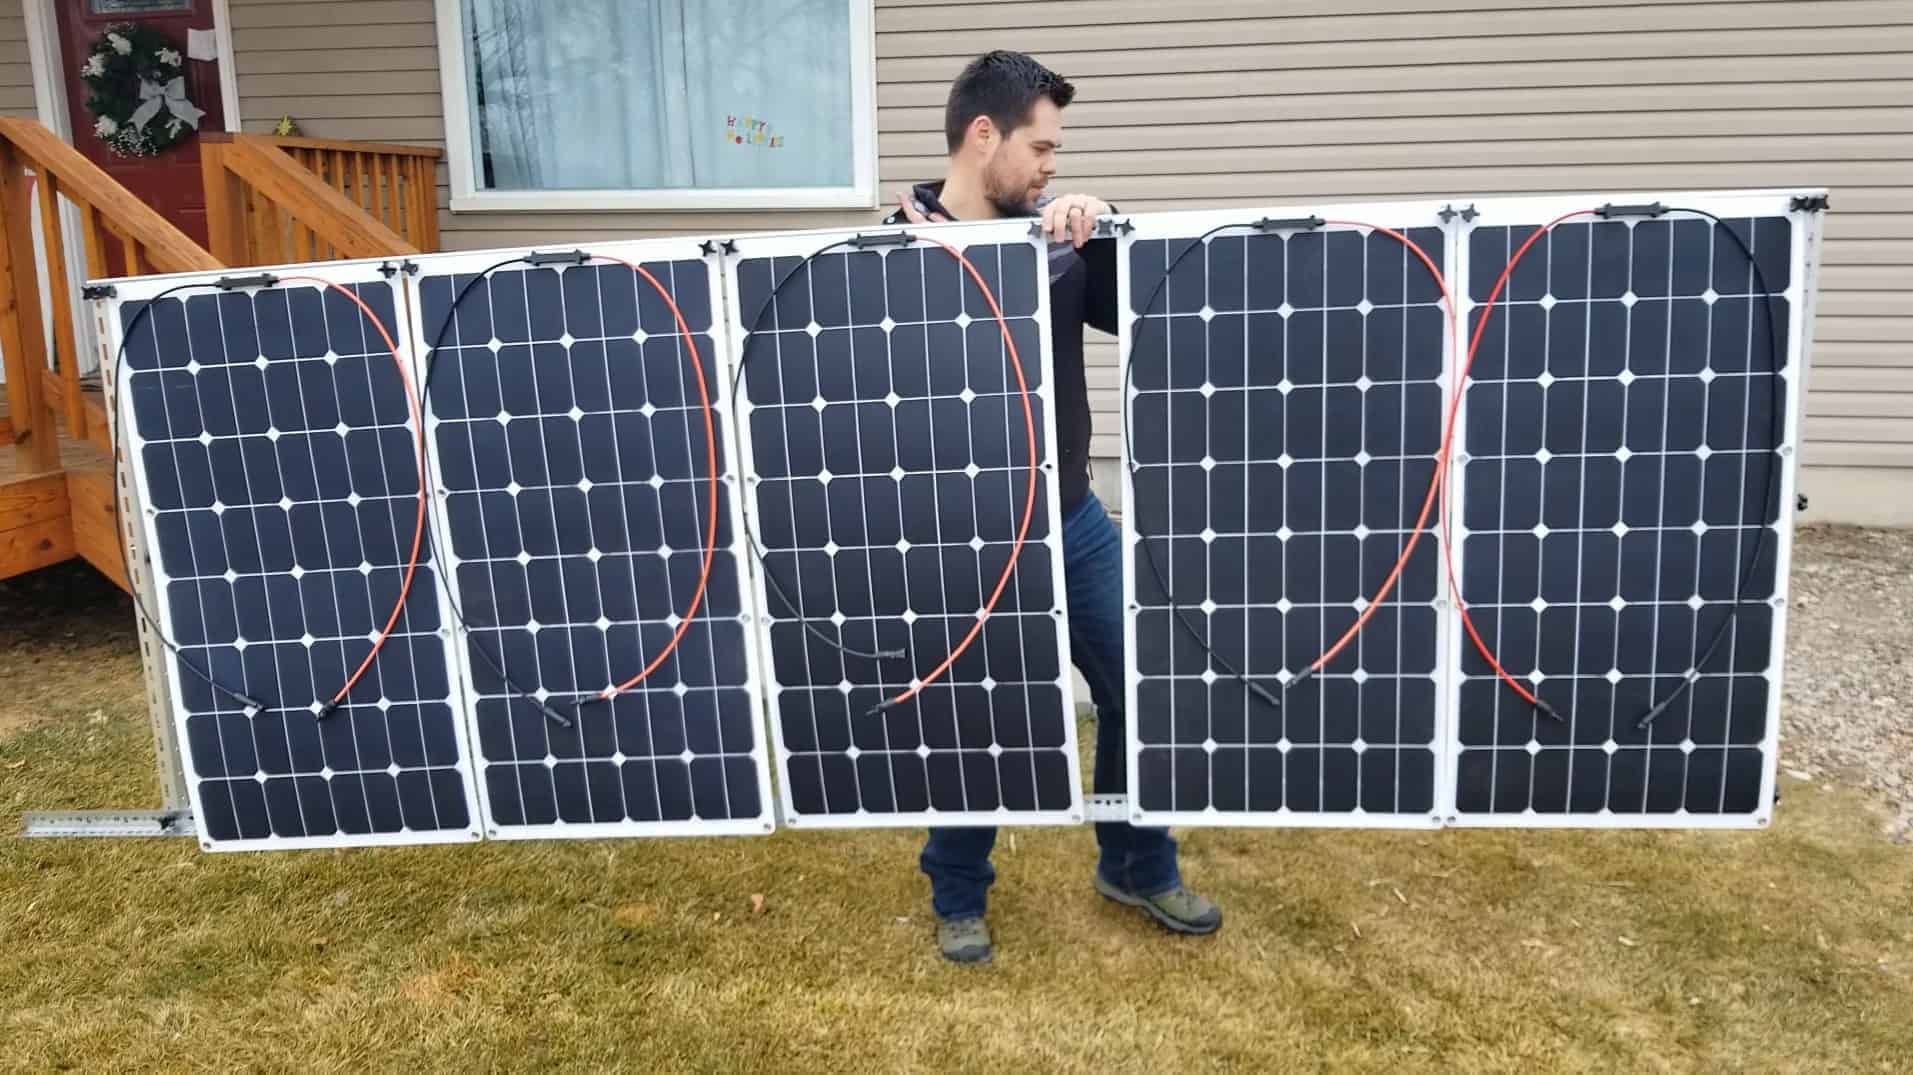 Солнечные панели - новый источник энергии для дома и не только